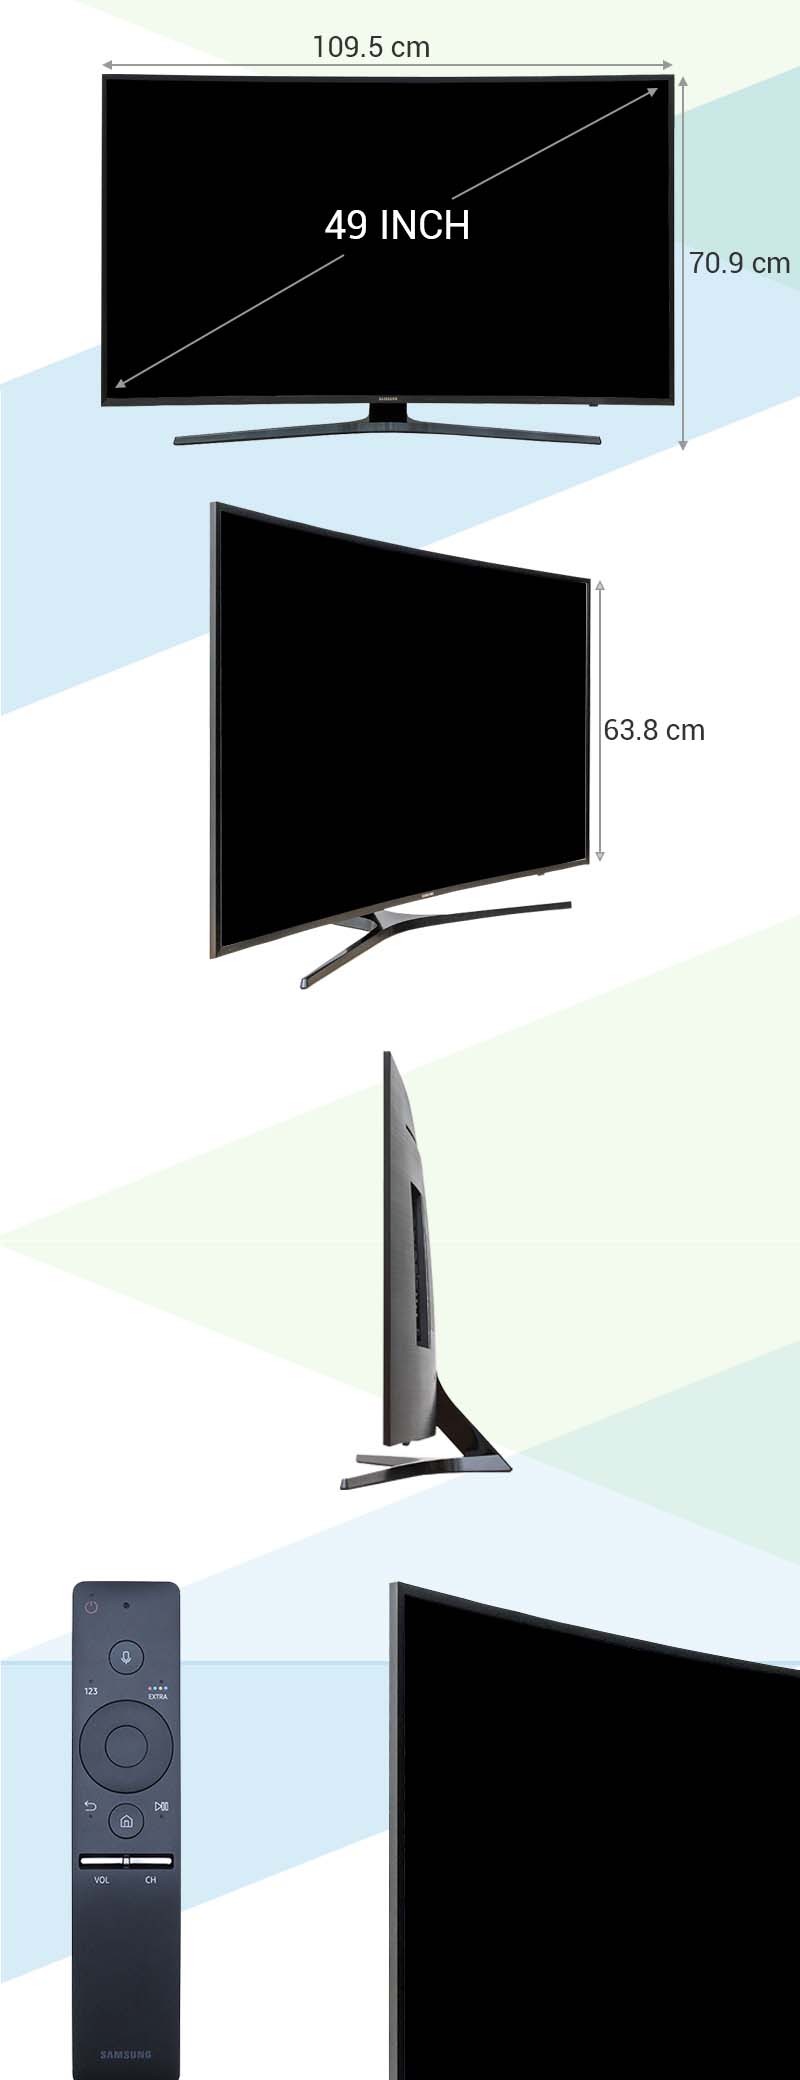 Smart Tivi Cong Samsung 49 inch UA49KU6500 - Kích thước tivi